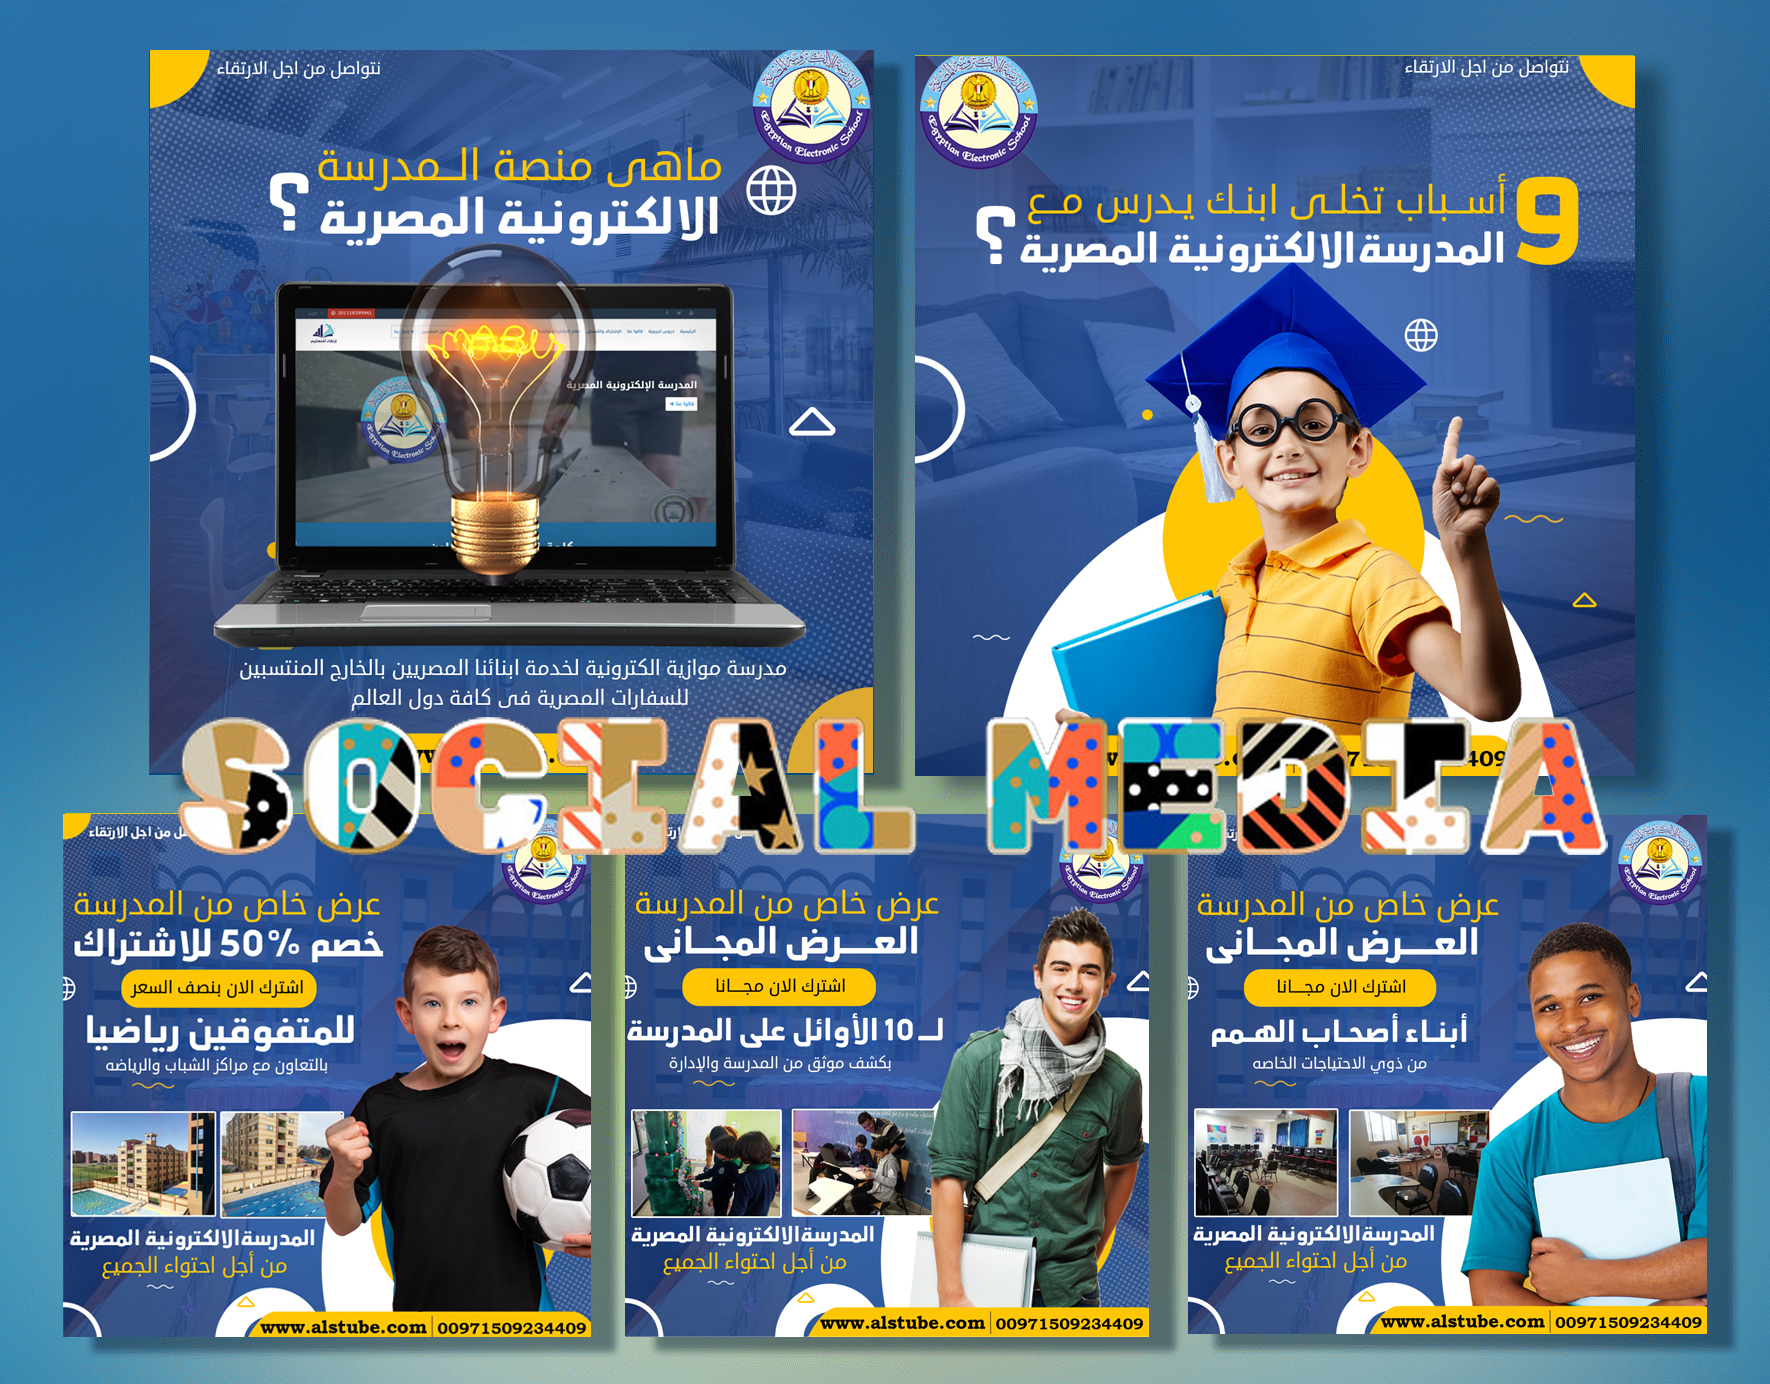 تصميمات سوشيال ميديا للمدرسة الالكترونية المصرية